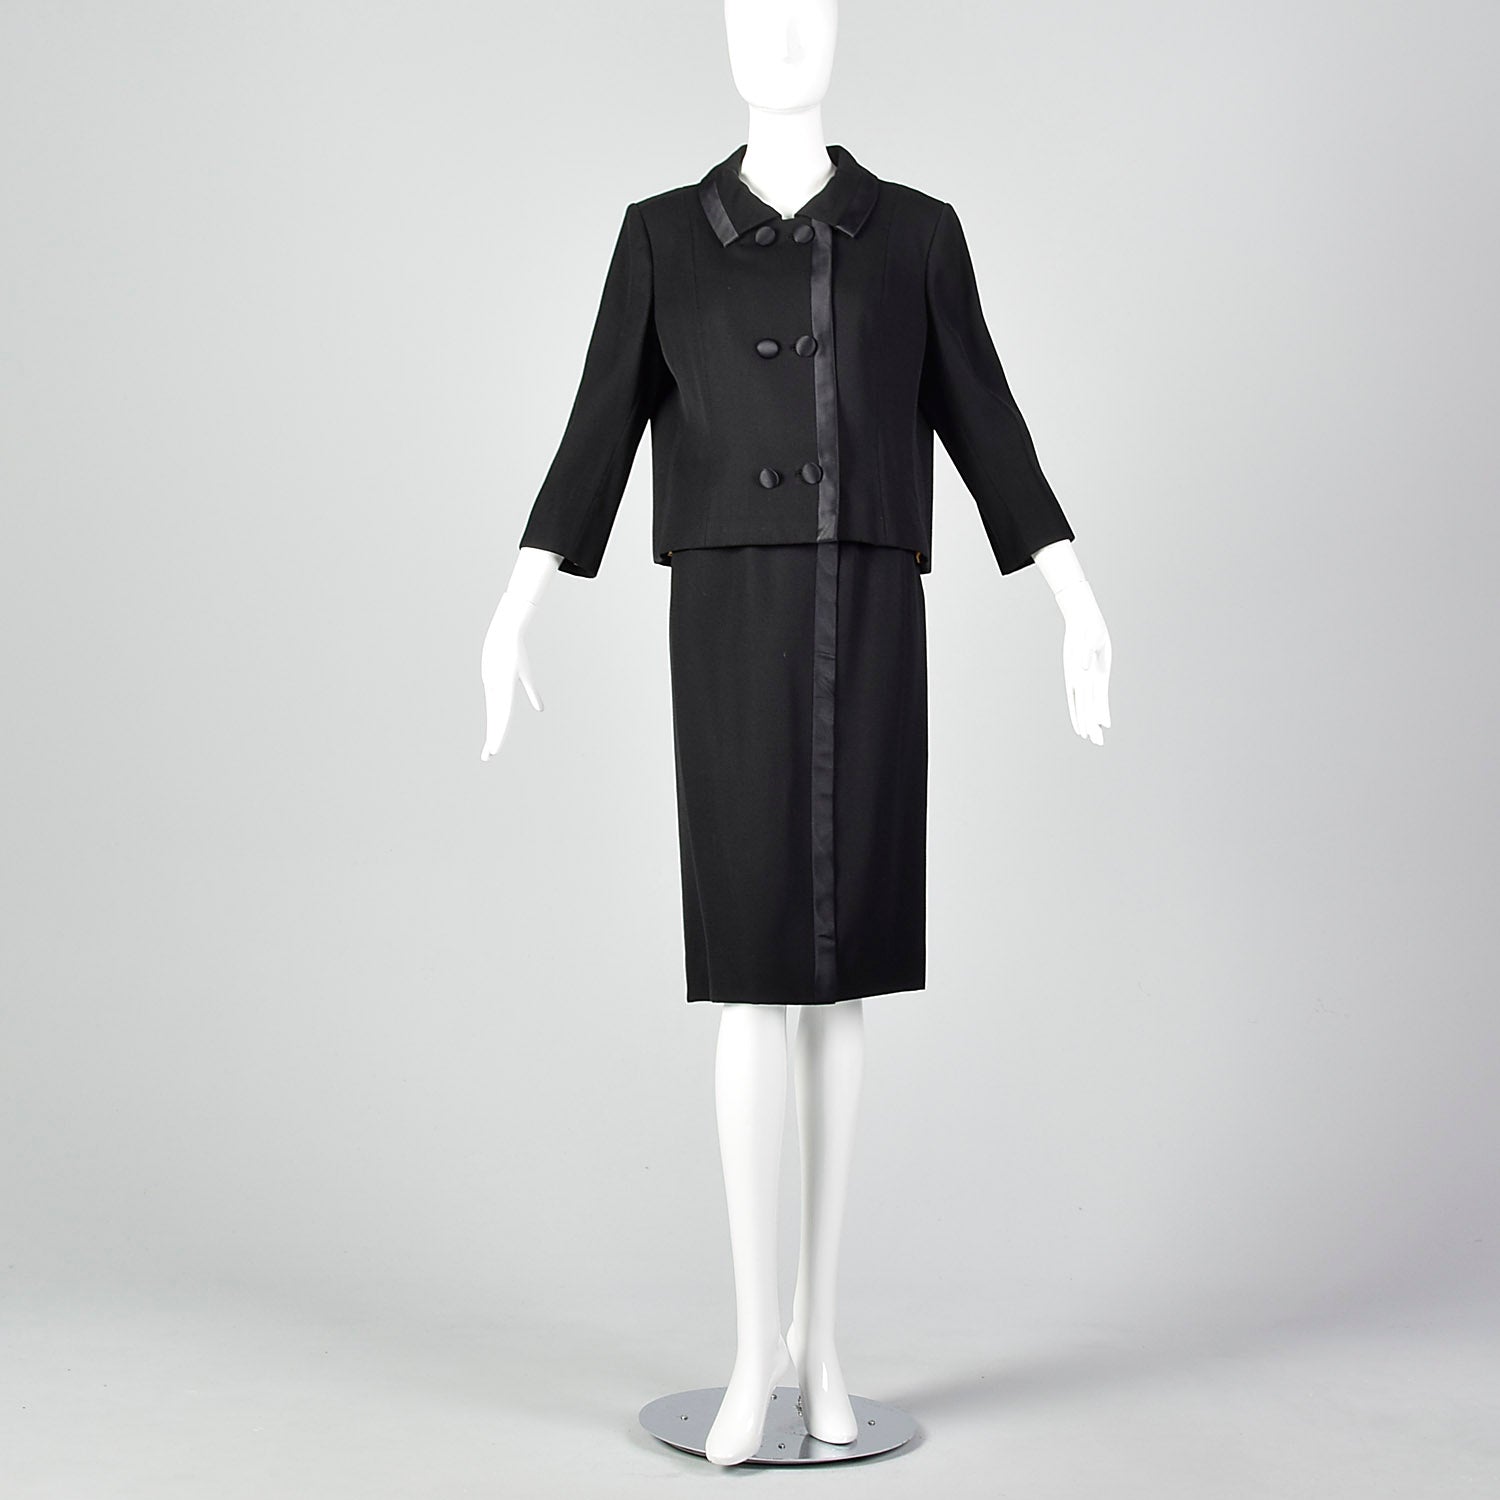 1960s Mod Black Skirt Suit